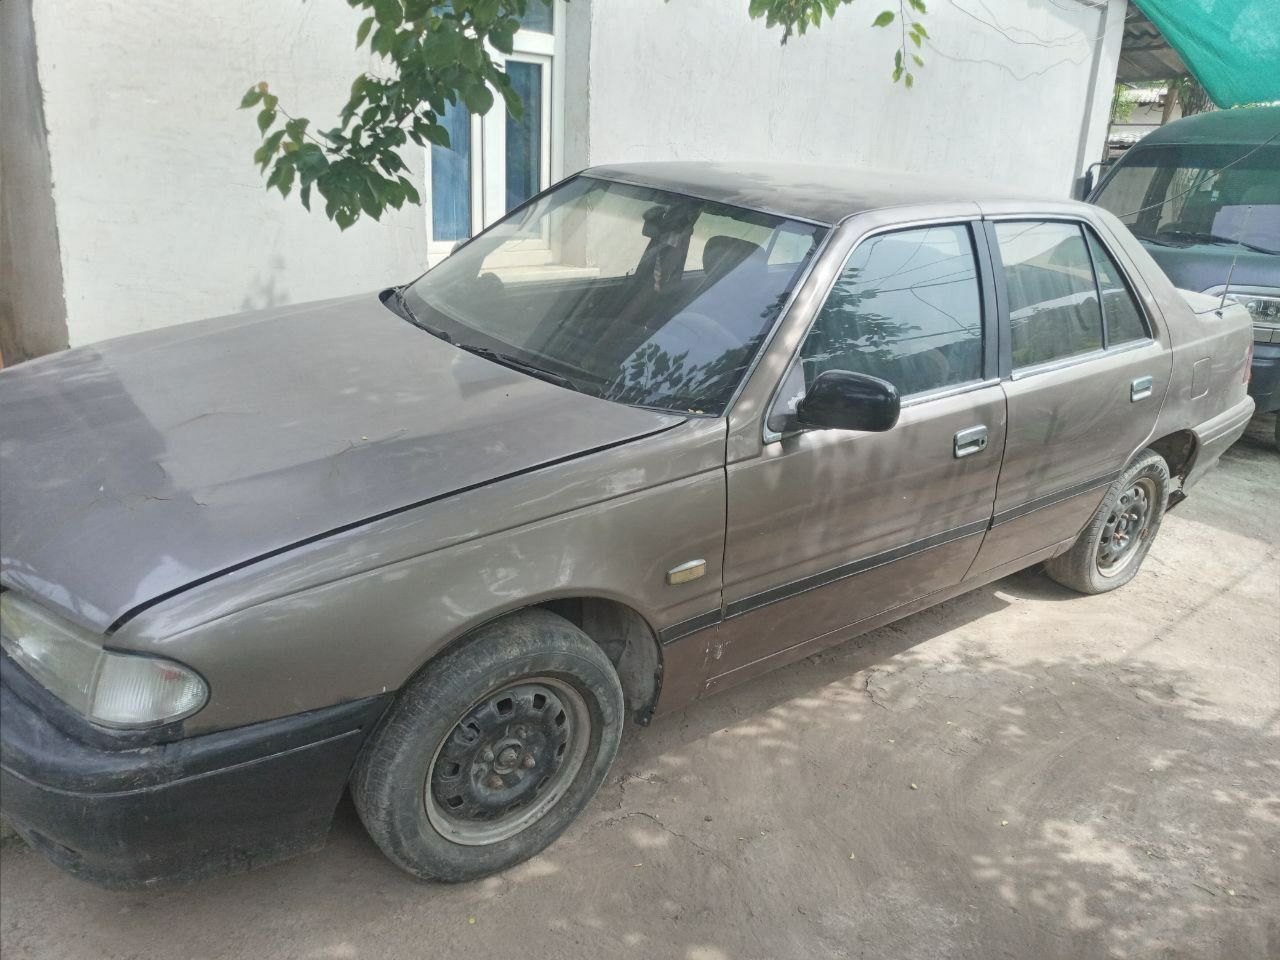 Продается машина Хундай-Соната 2..Цвет бежевый кашемир,1991года.Двигат